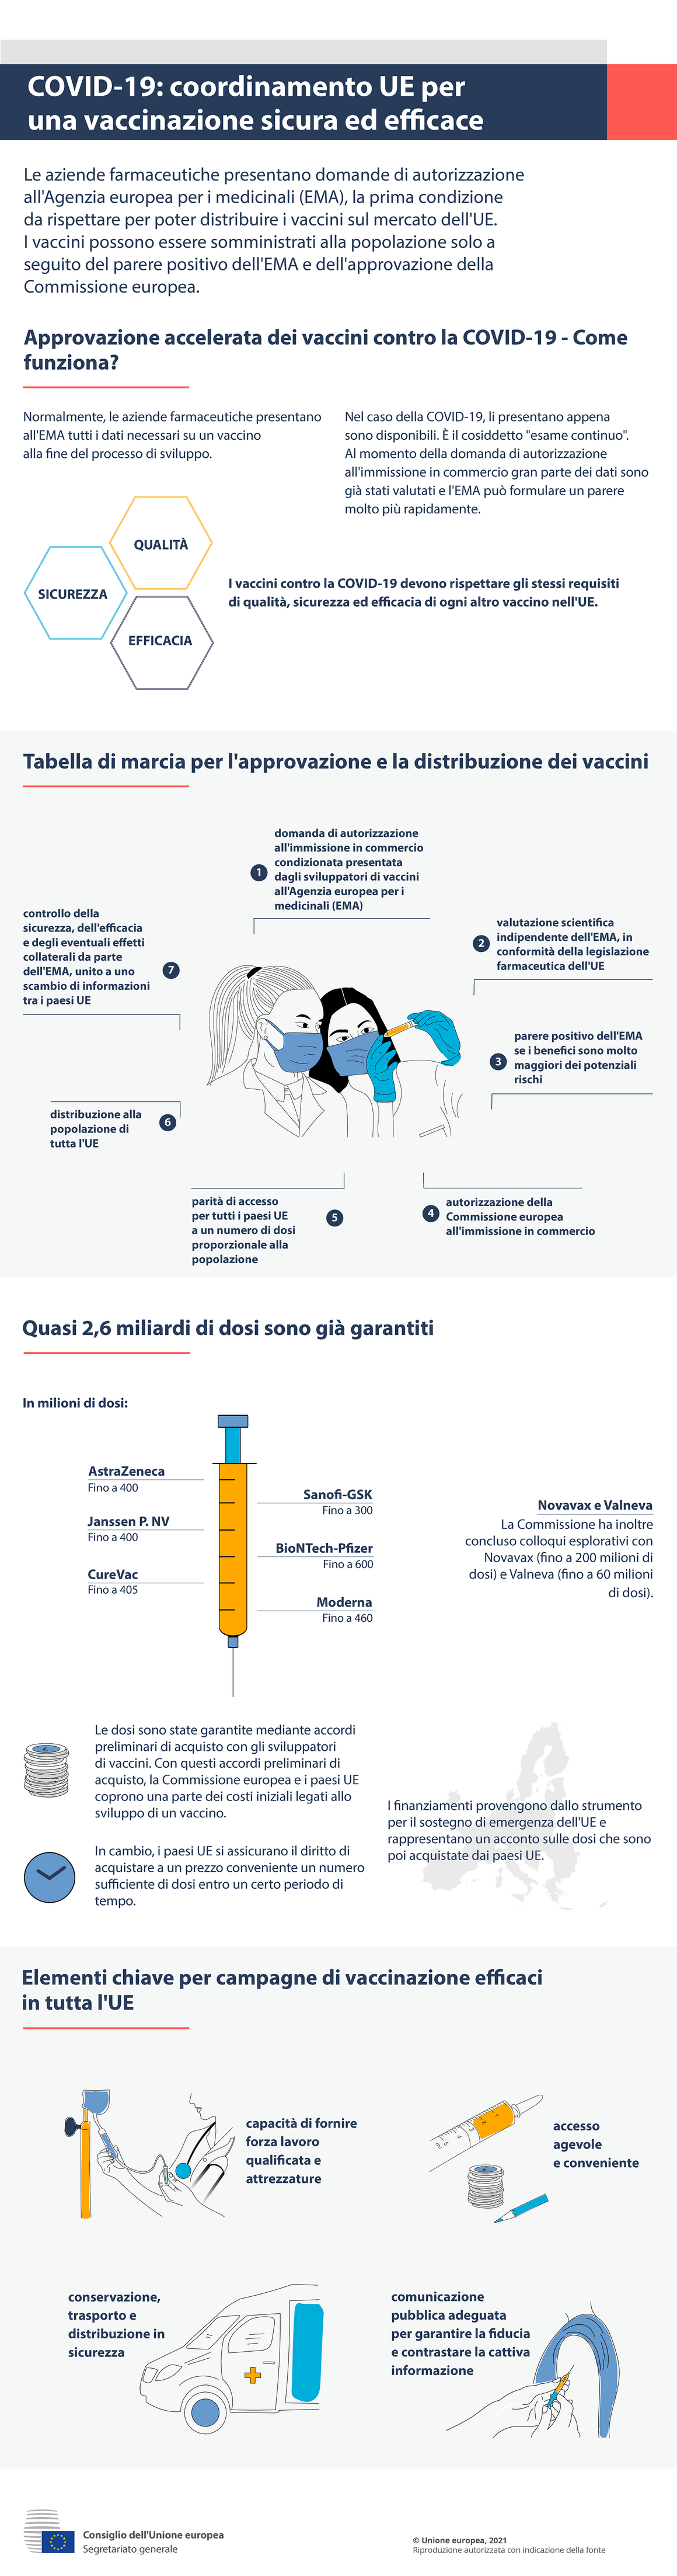 Infografica - COVID-19: coordinamento UE per una vaccinazione sicura ed efficace